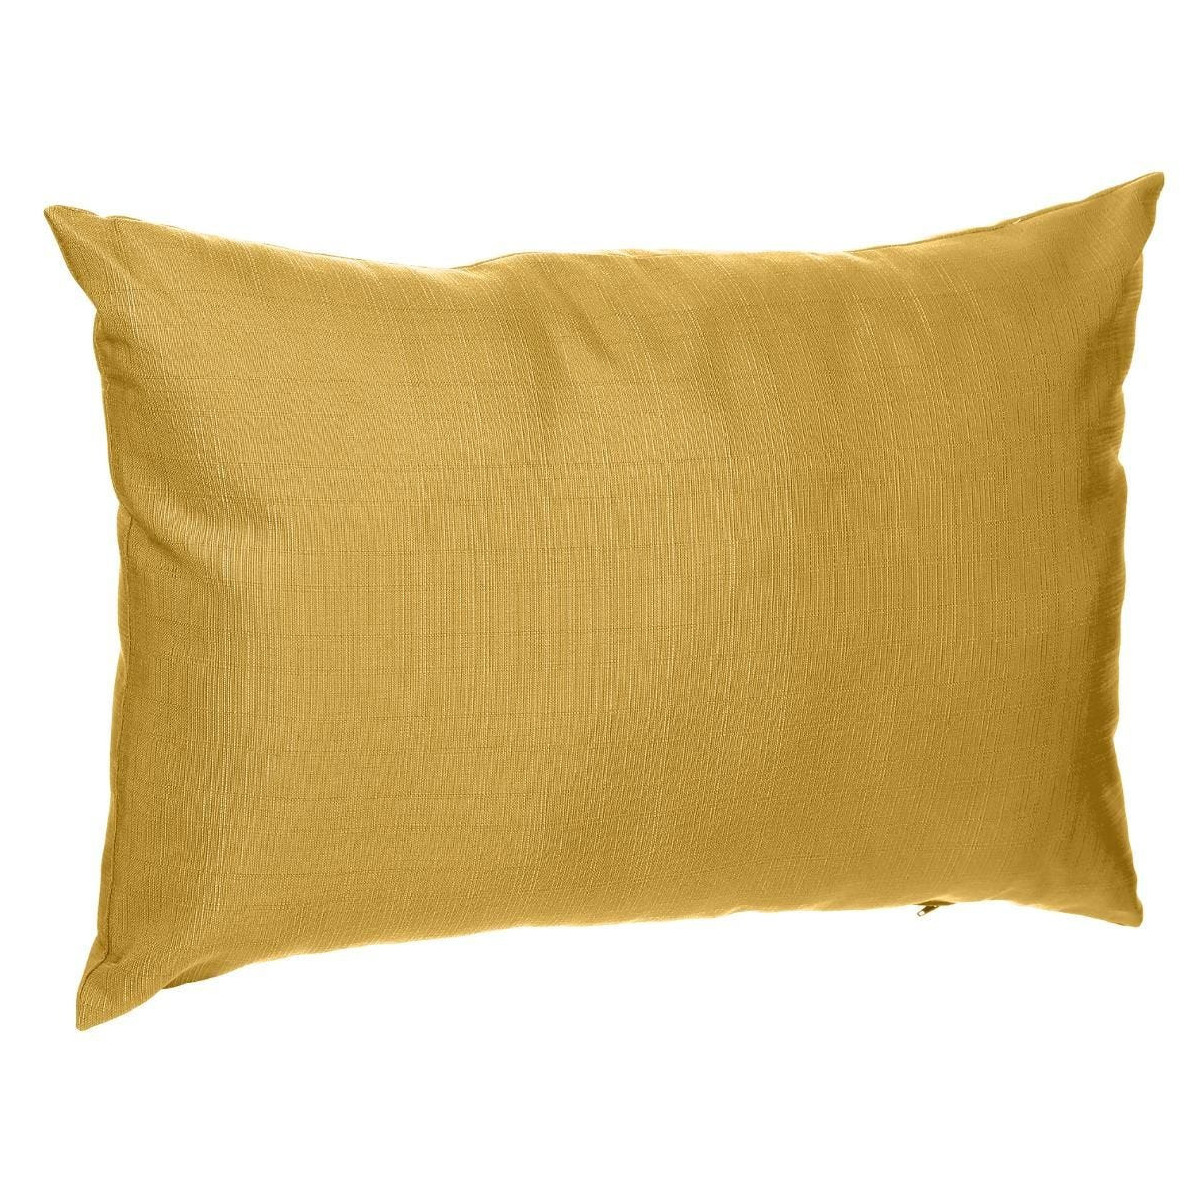 Bank-sier-tuin kussens voor binnen en buiten in de kleur mosterd geel 30 x 50 x 10 cm